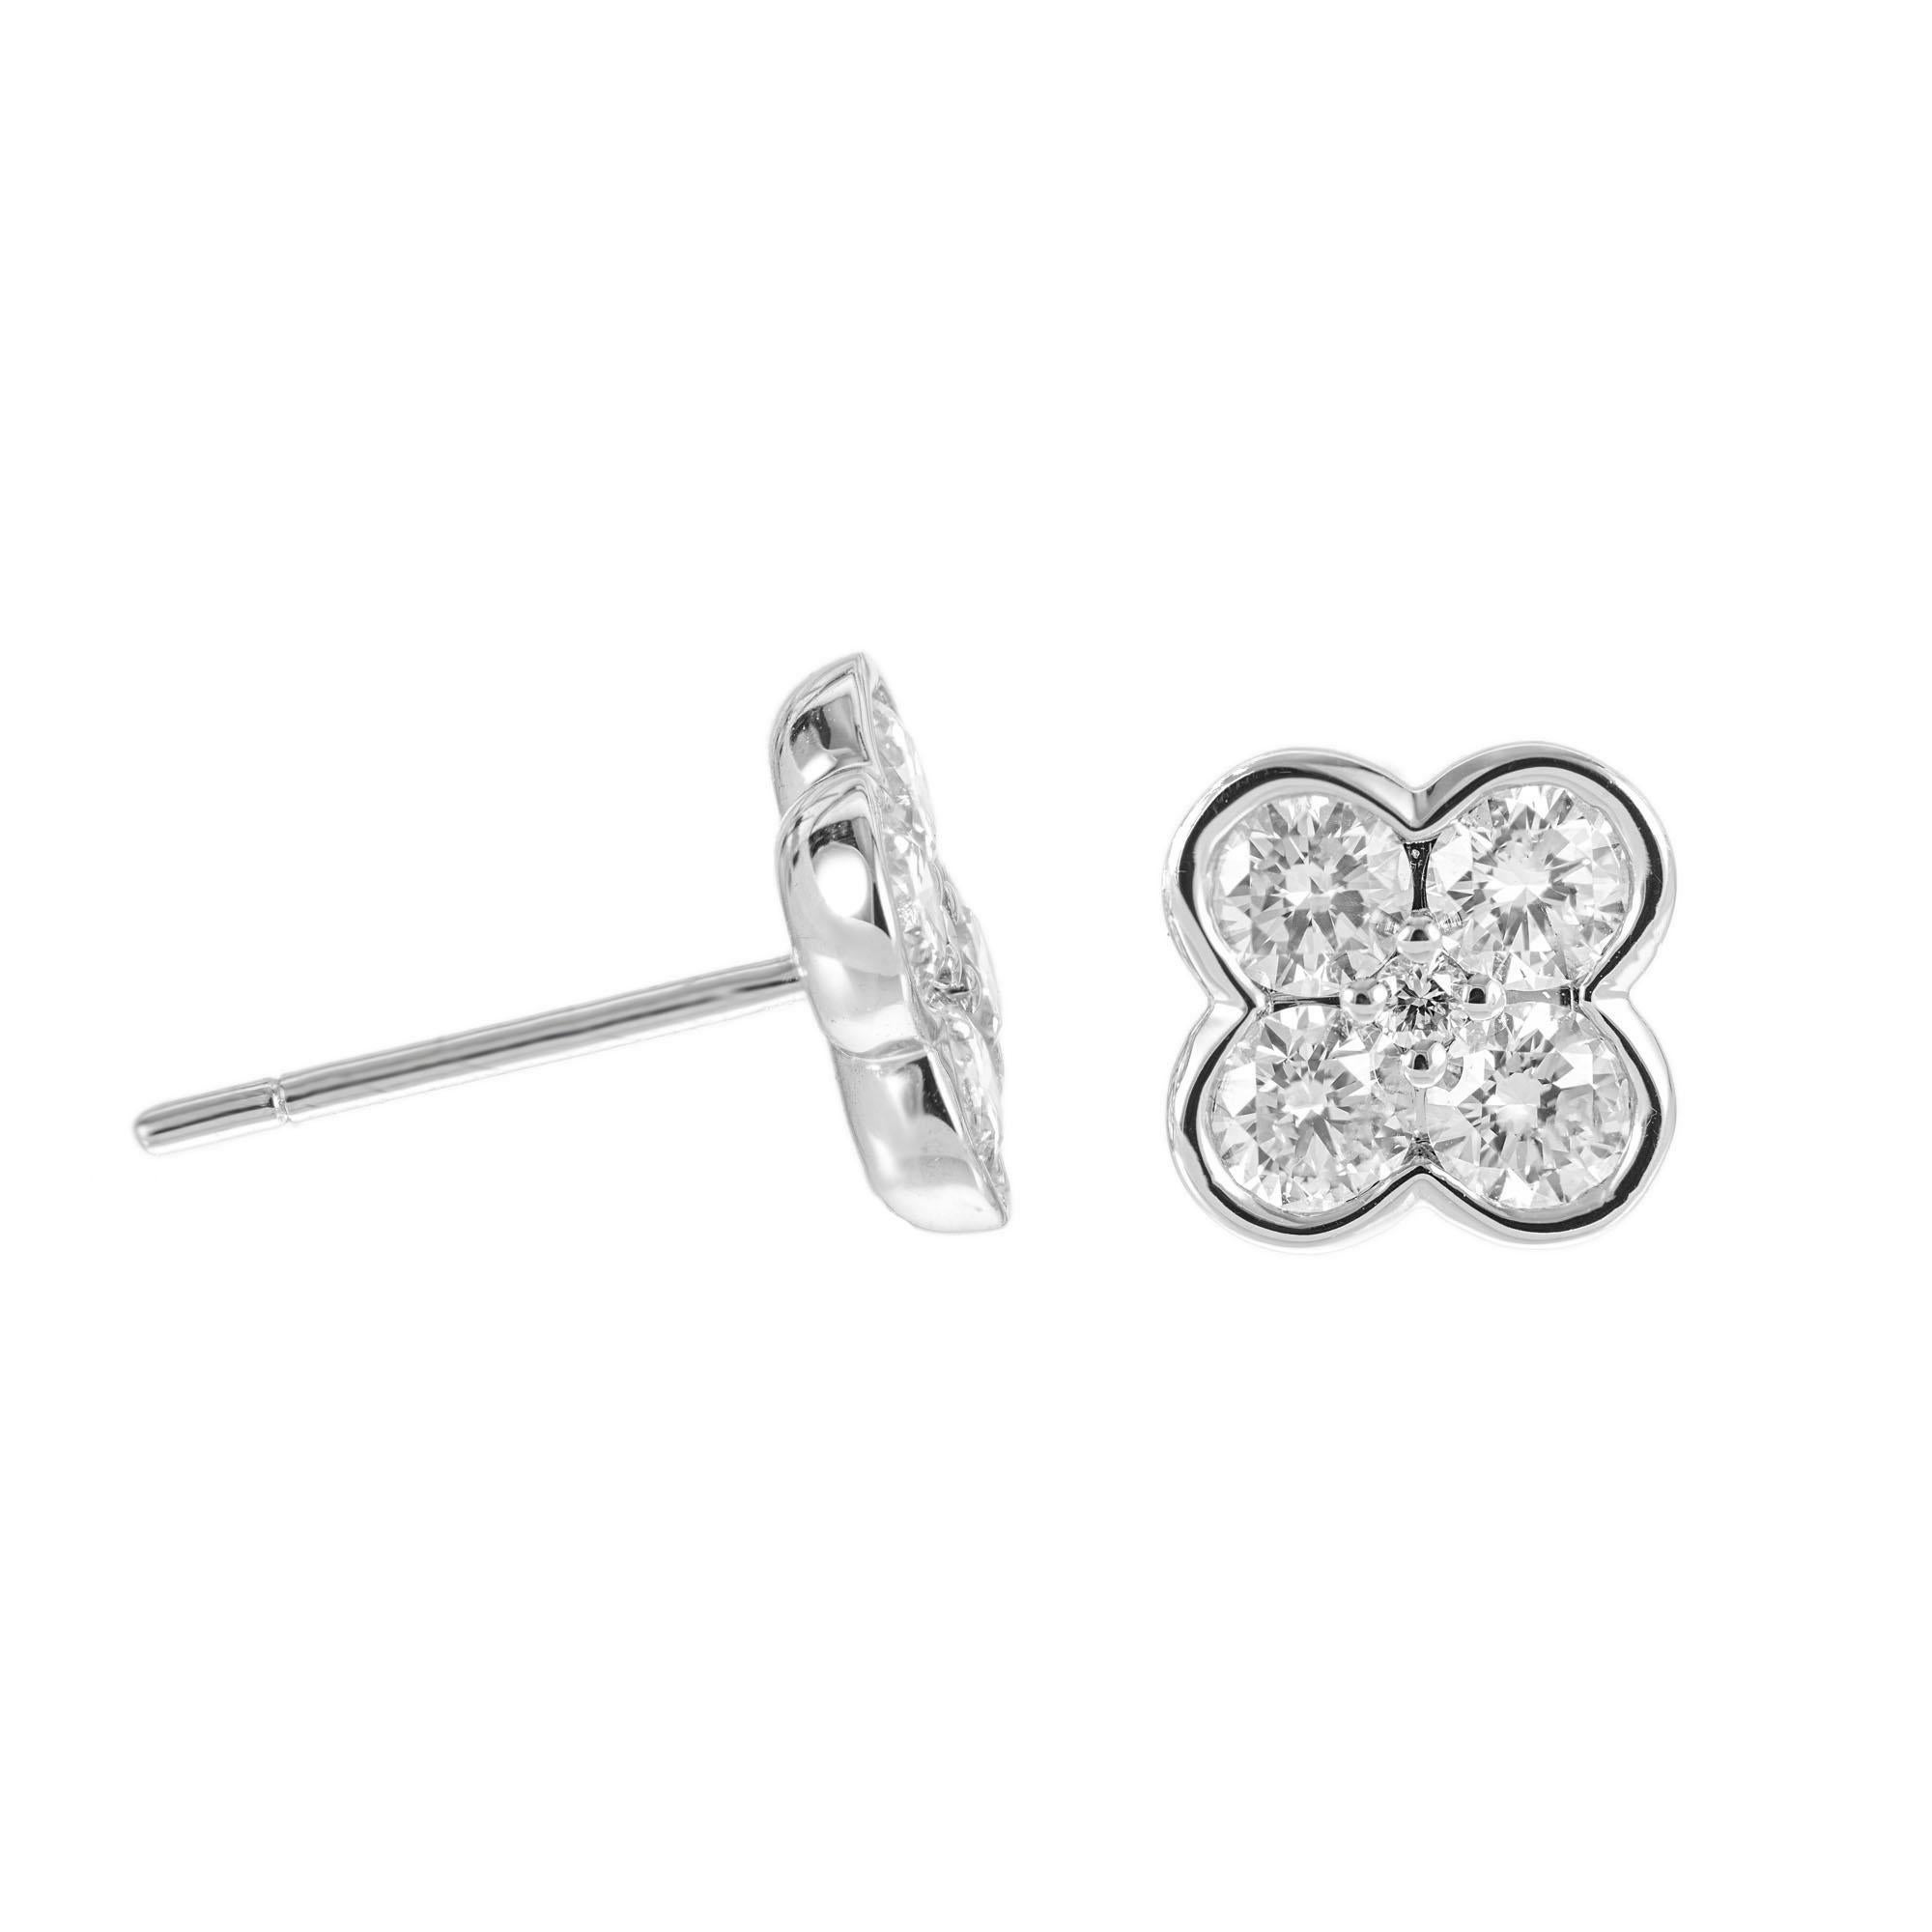 4 petal flower earrings